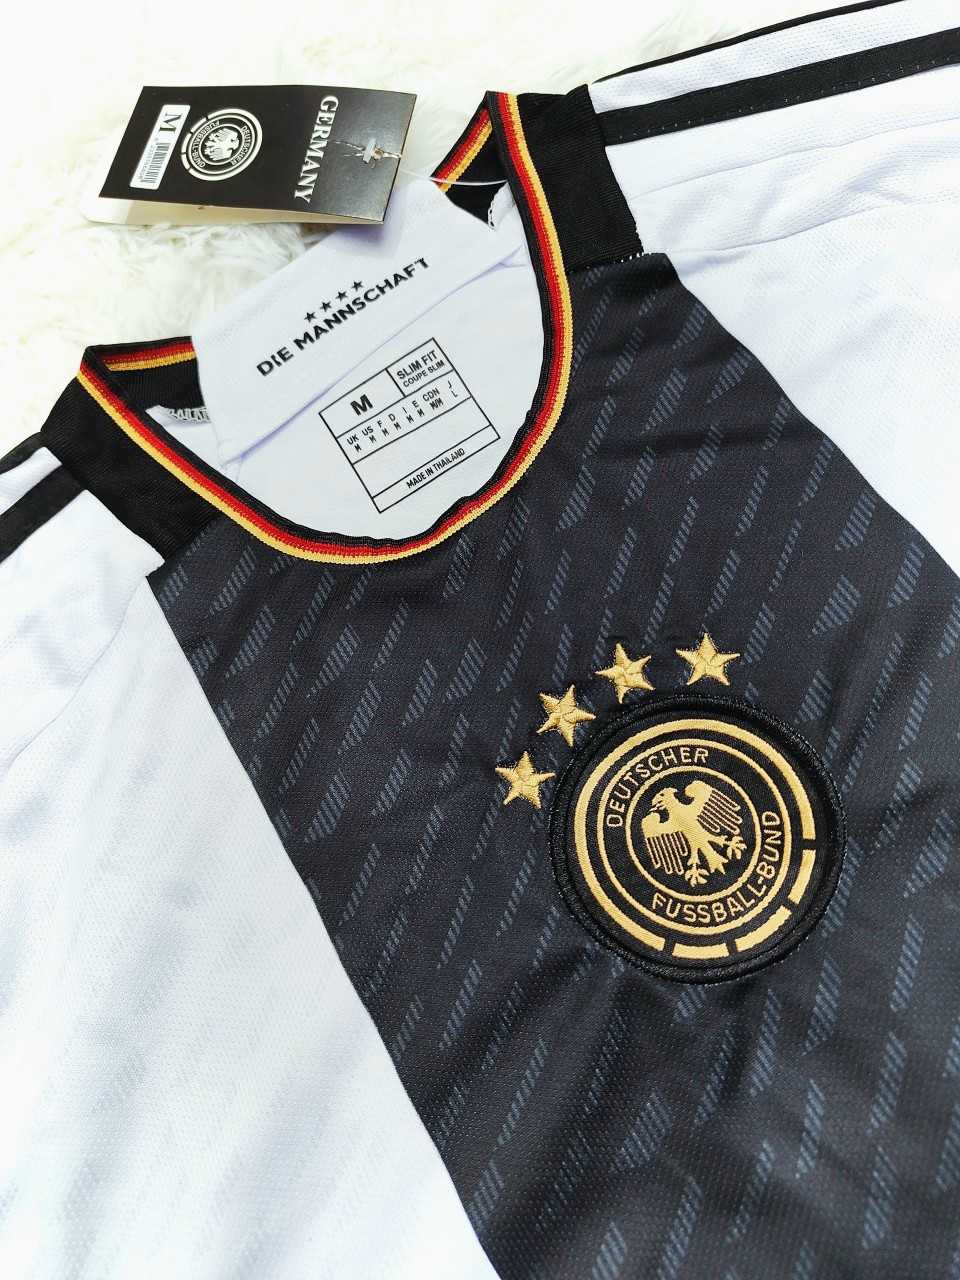 Bộ quần áo bóng đá đội tuyển đức gen màu trắng đen world cup 2022 logo thêu gai thái 1